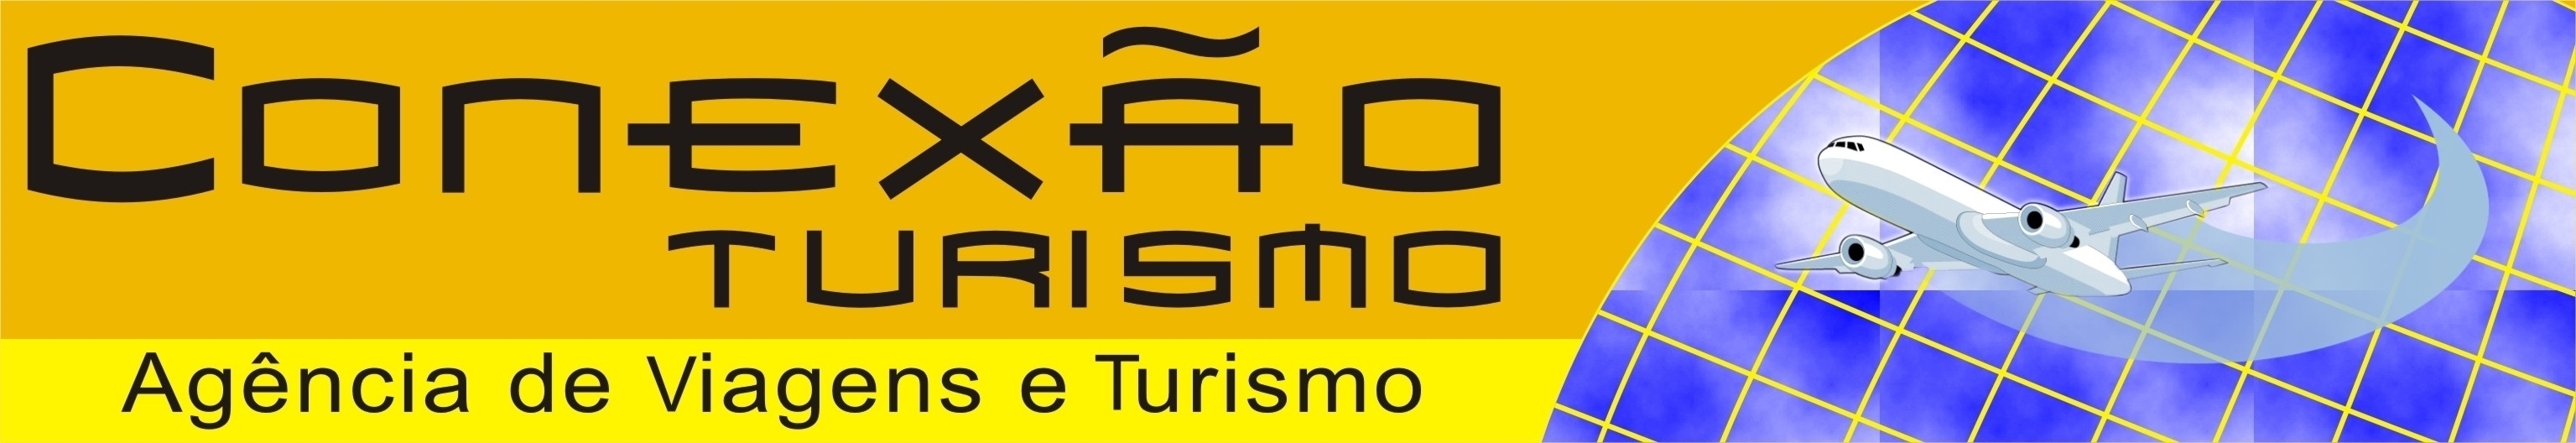 conexao tur logo (2)